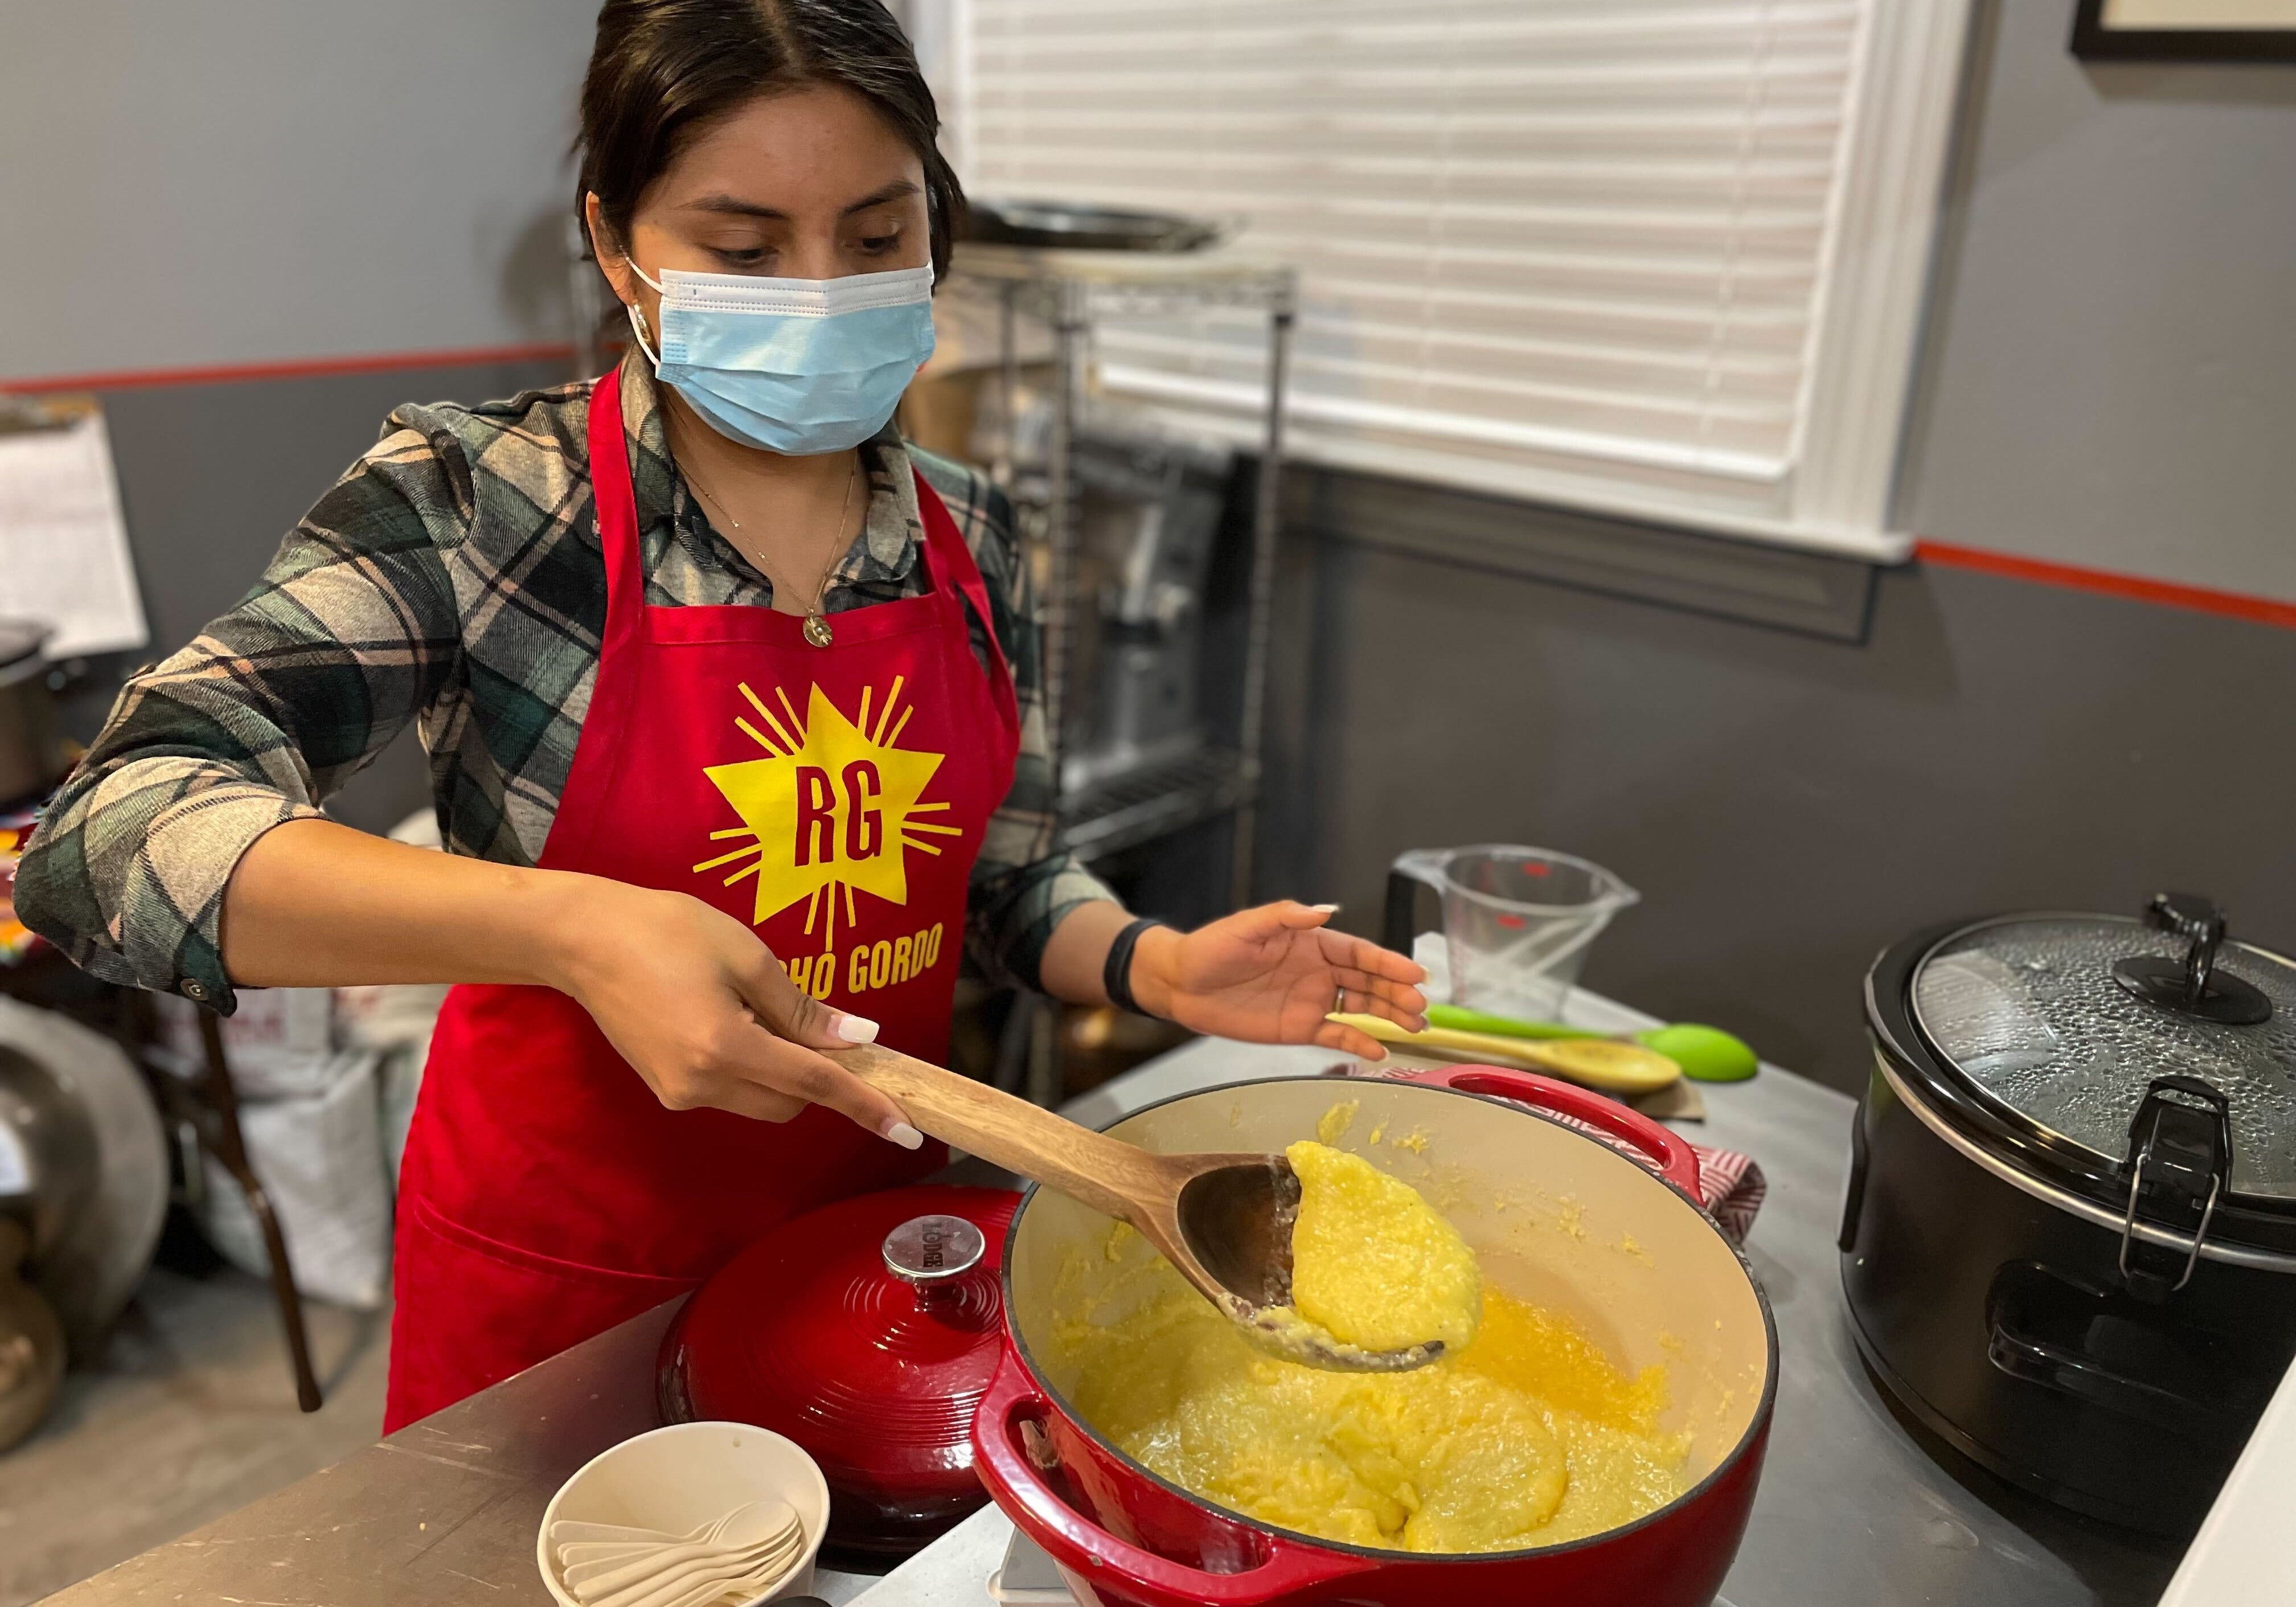 Rancho Gordo female employee cooking yellow polenta 